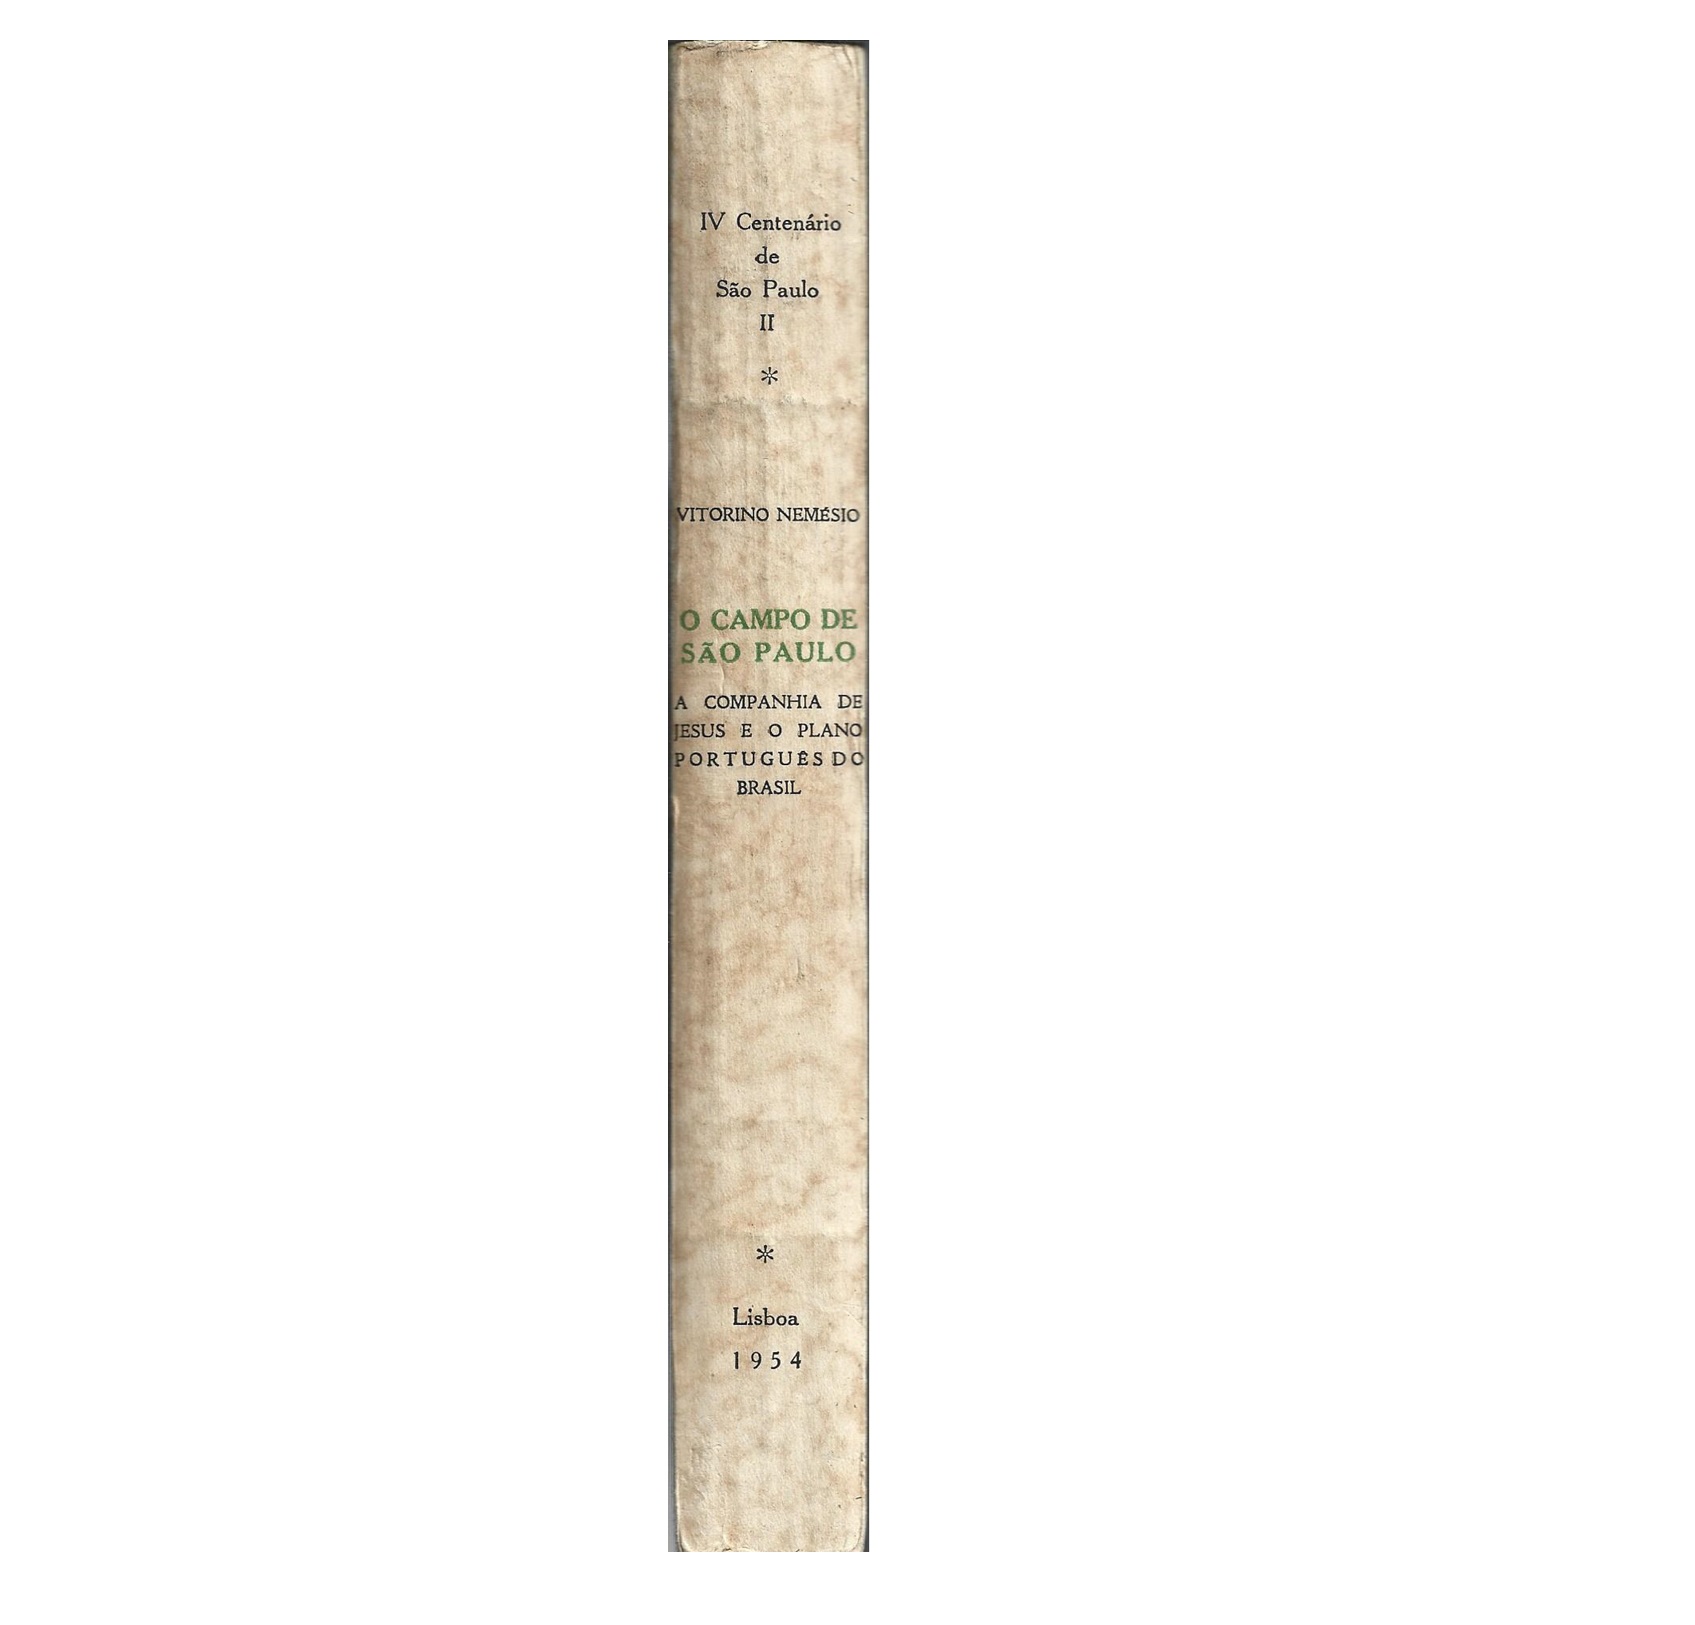 A COMPANHIA DE JESUS E O PLANO PORTUGUÊS DO BRASIL (1528-1563)